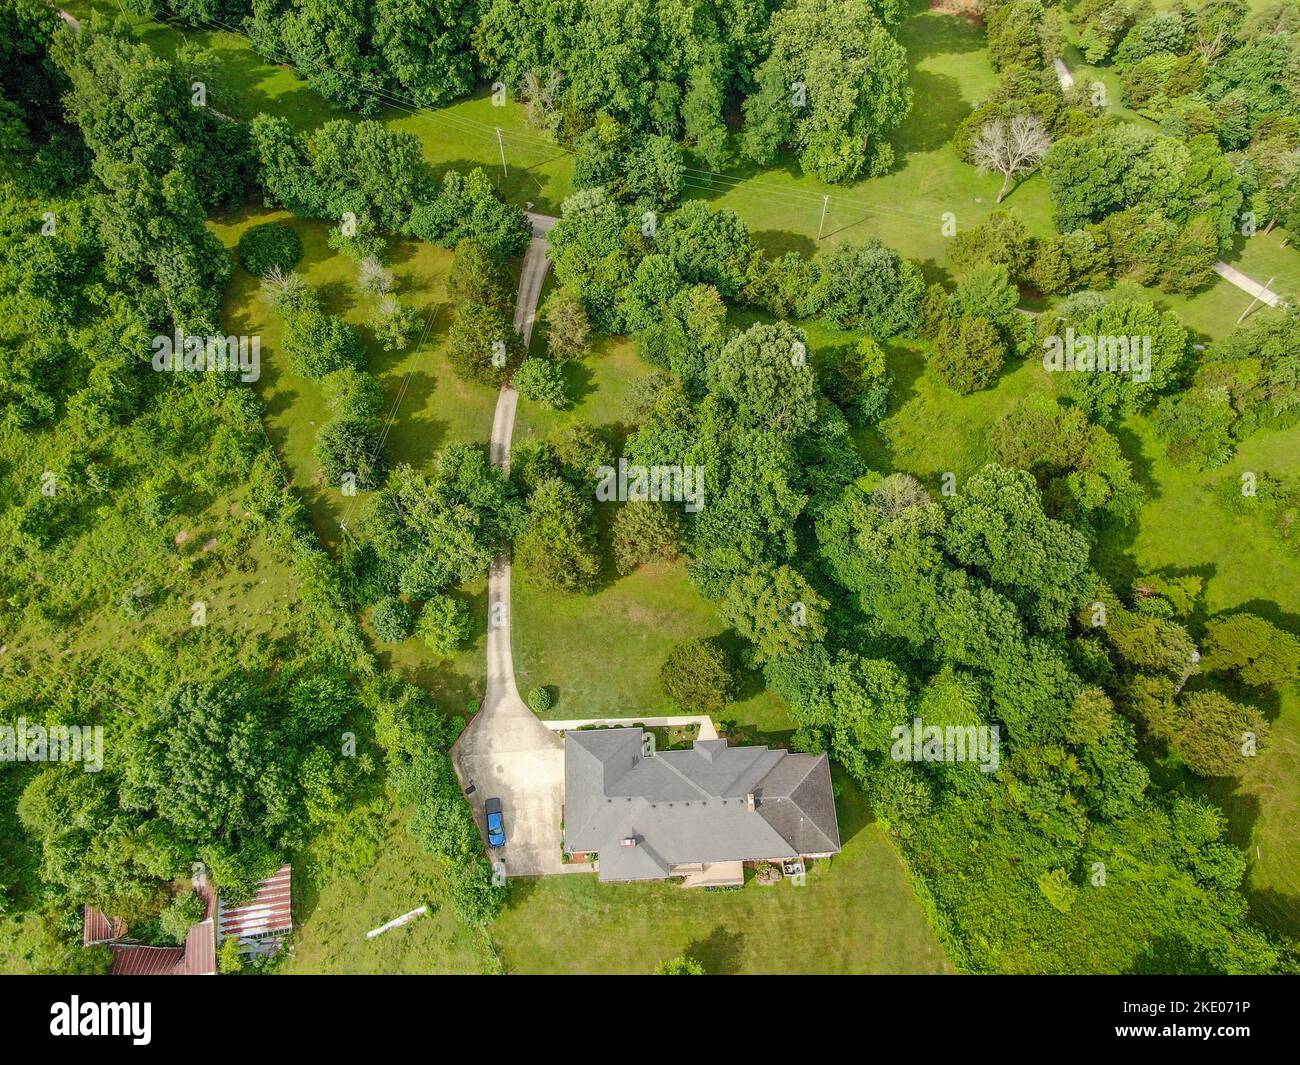 Une vue aérienne d'une maison sur un pré vert à Cookeville, Tennessee, entouré d'arbres verts Banque D'Images